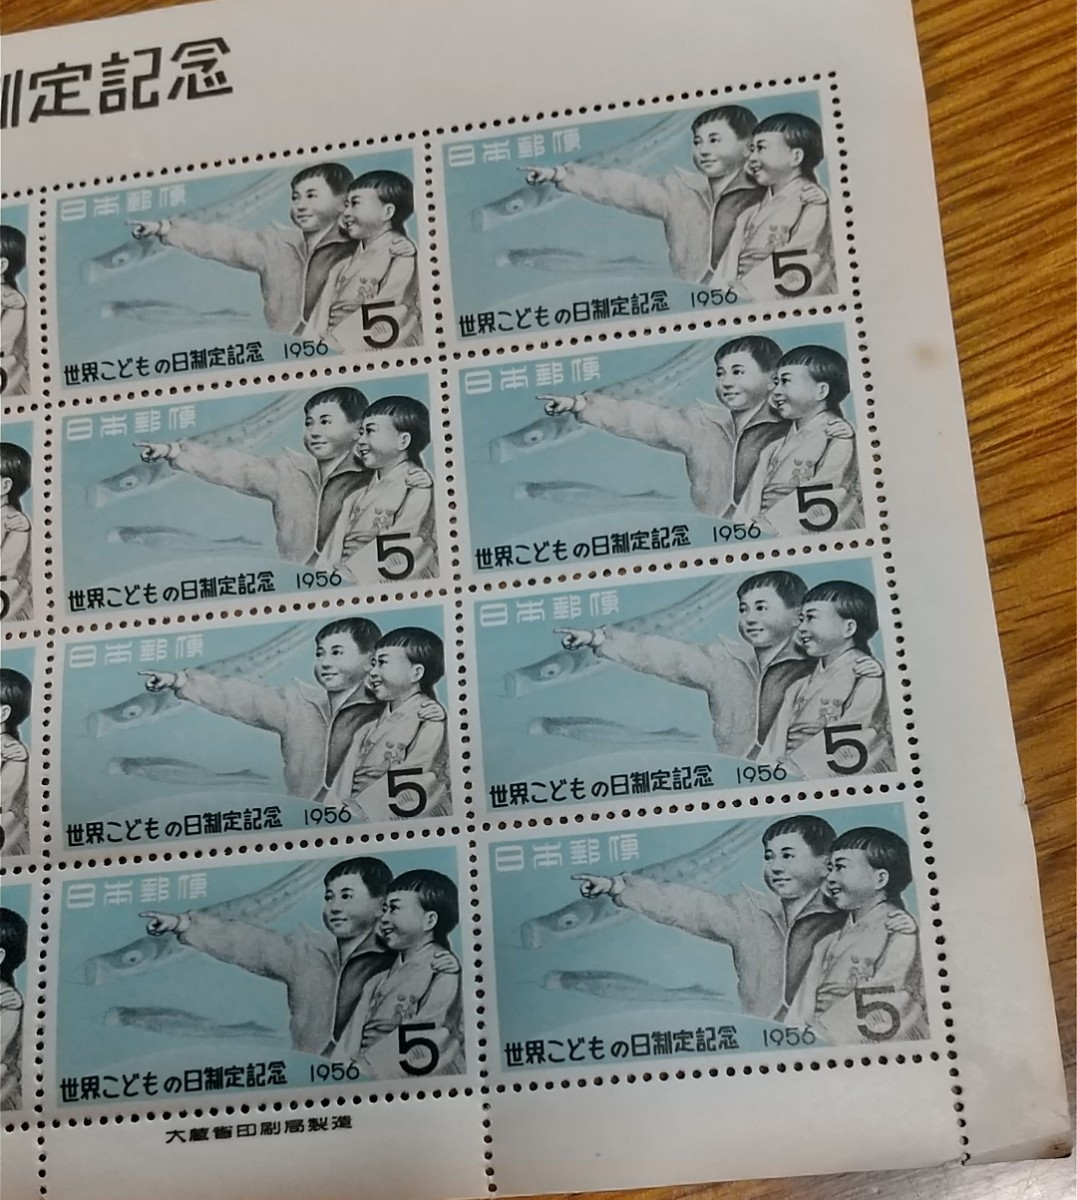 世界こどもの日制定記念 切手  